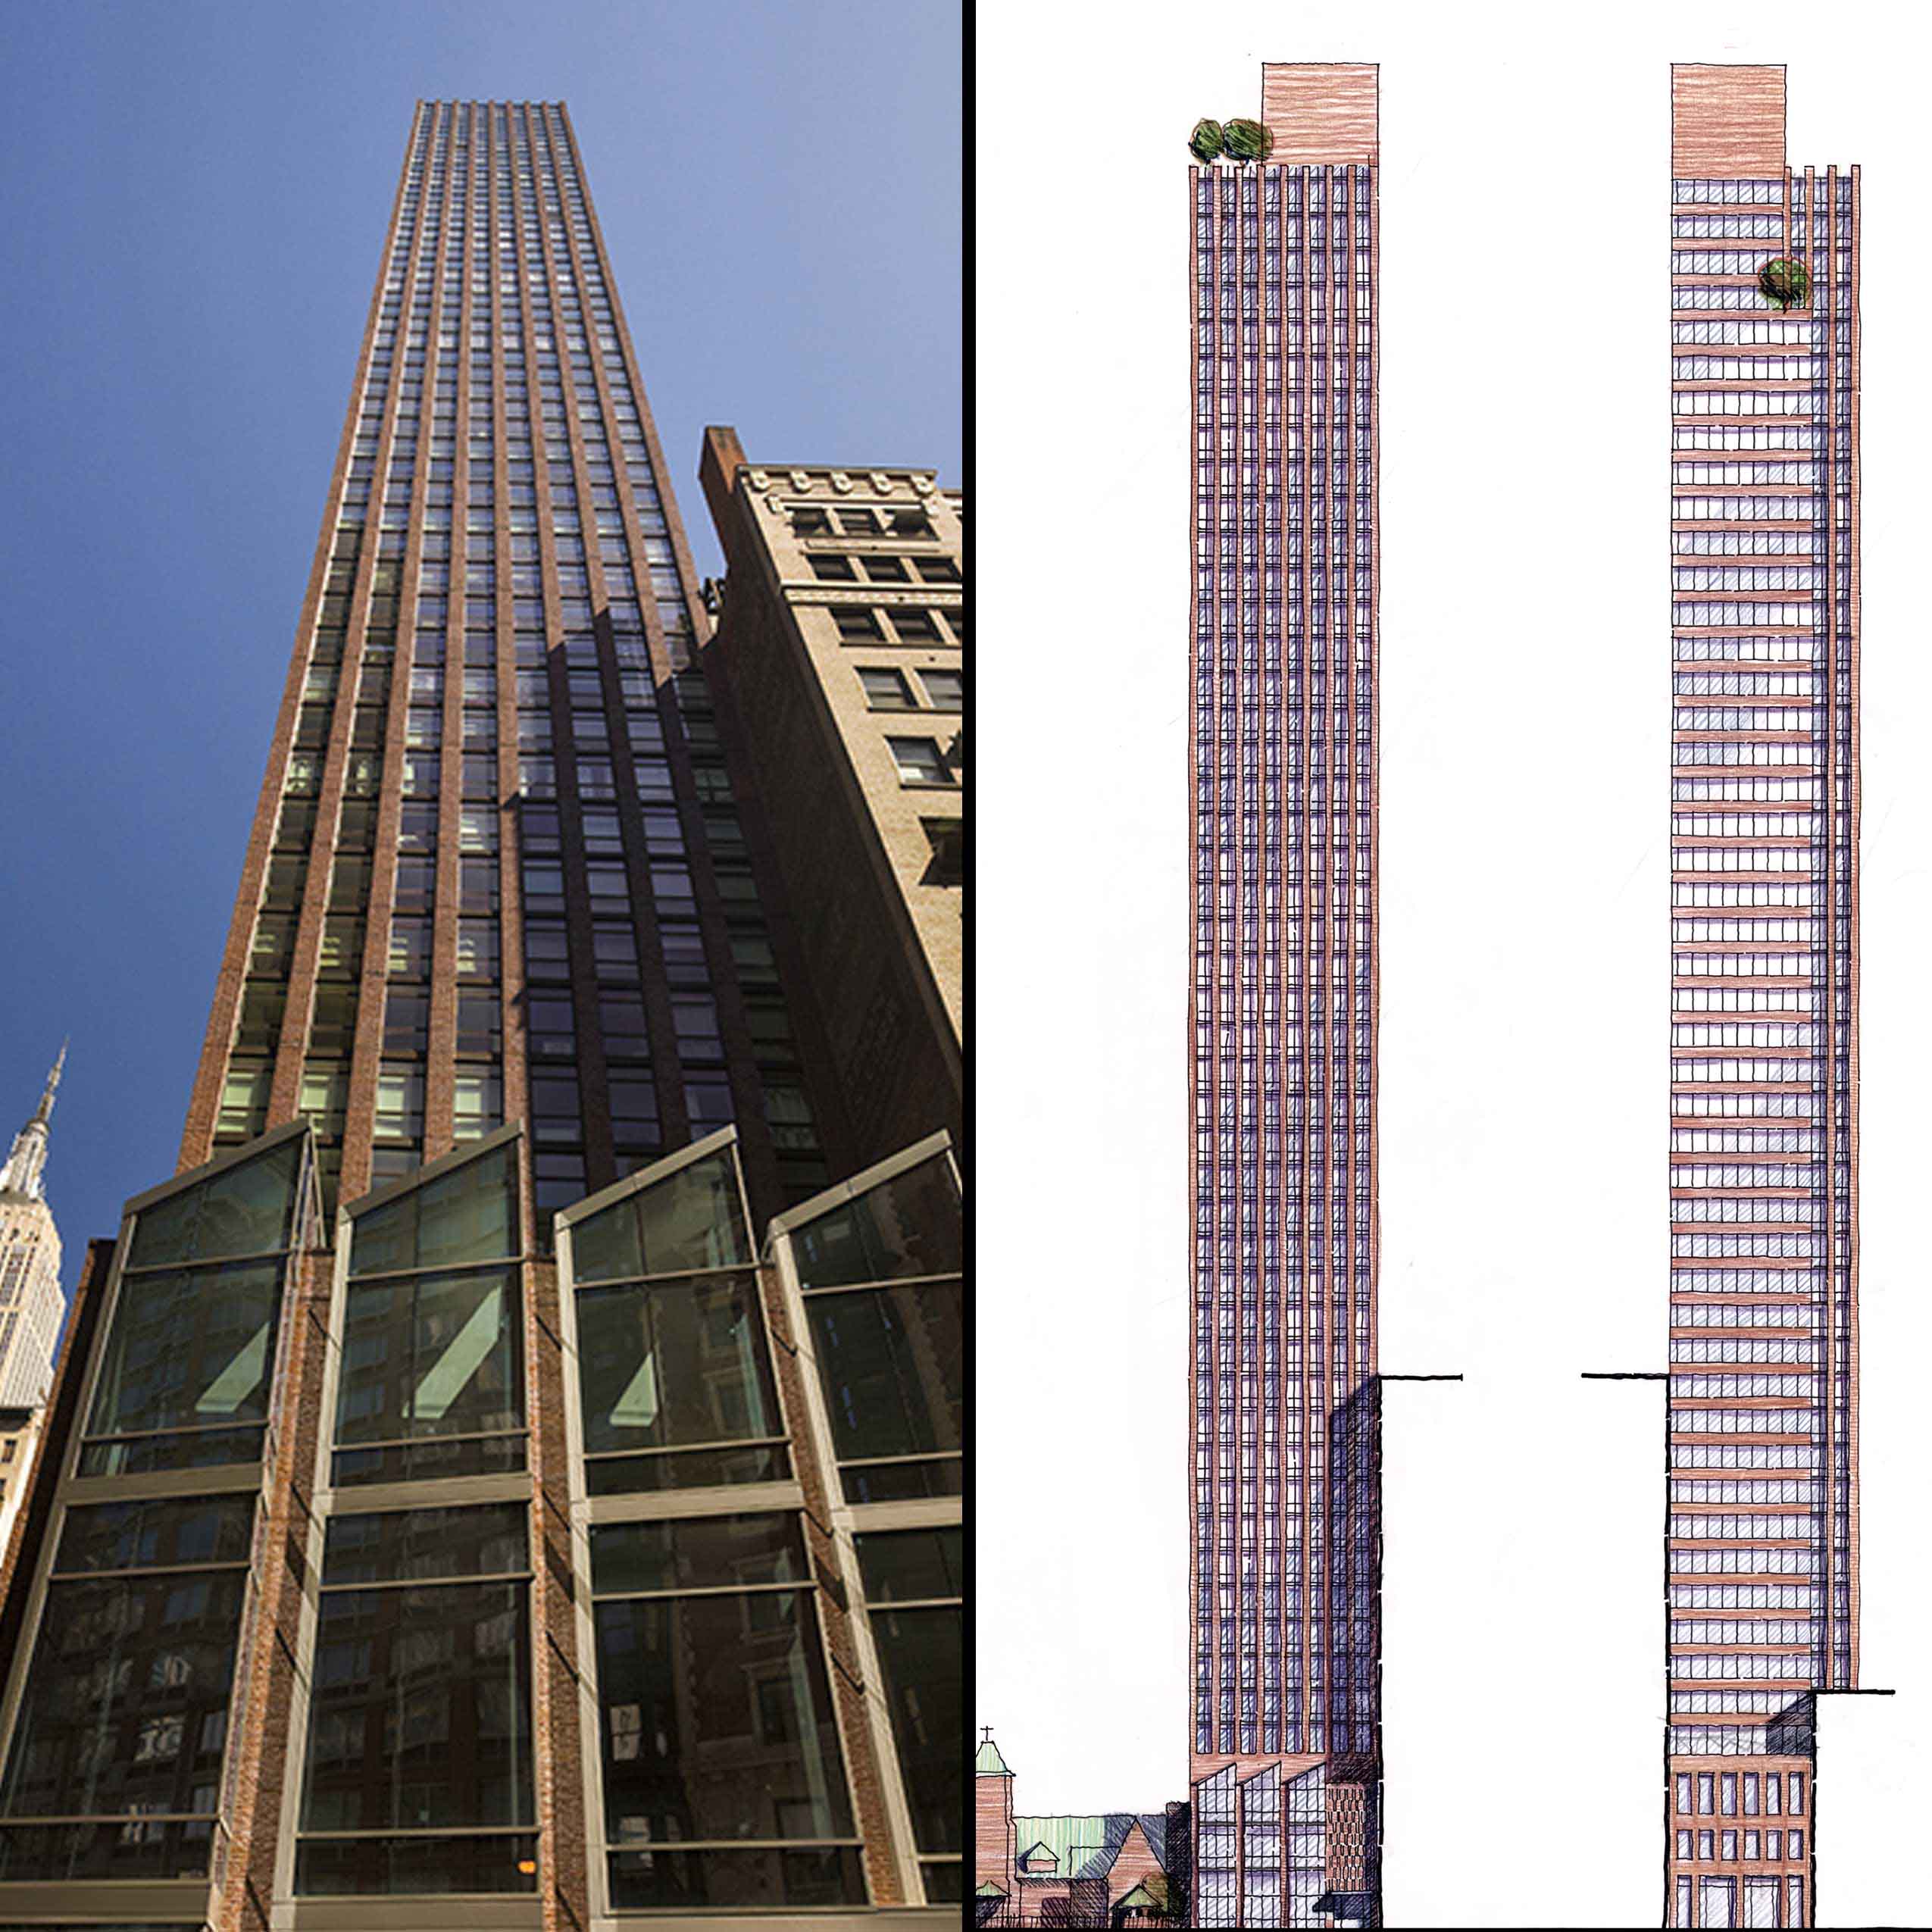 Left: Photograph by David Sundberg/ESTO. Right: Architect's sketch, FXFOWLE